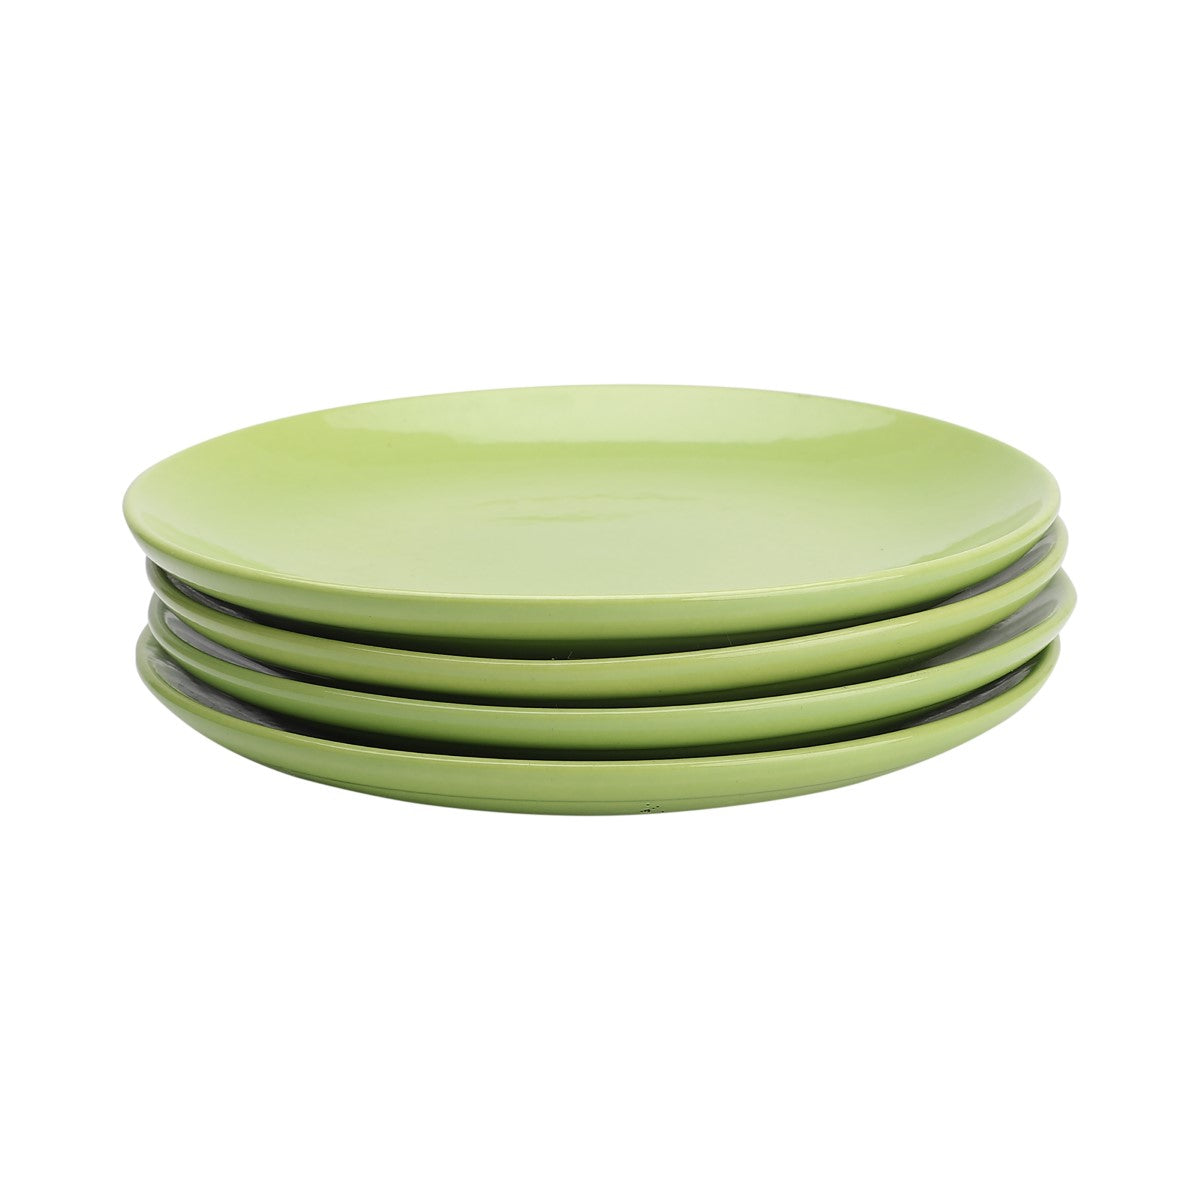 Ceramic Quarter Plates (Set of 4)